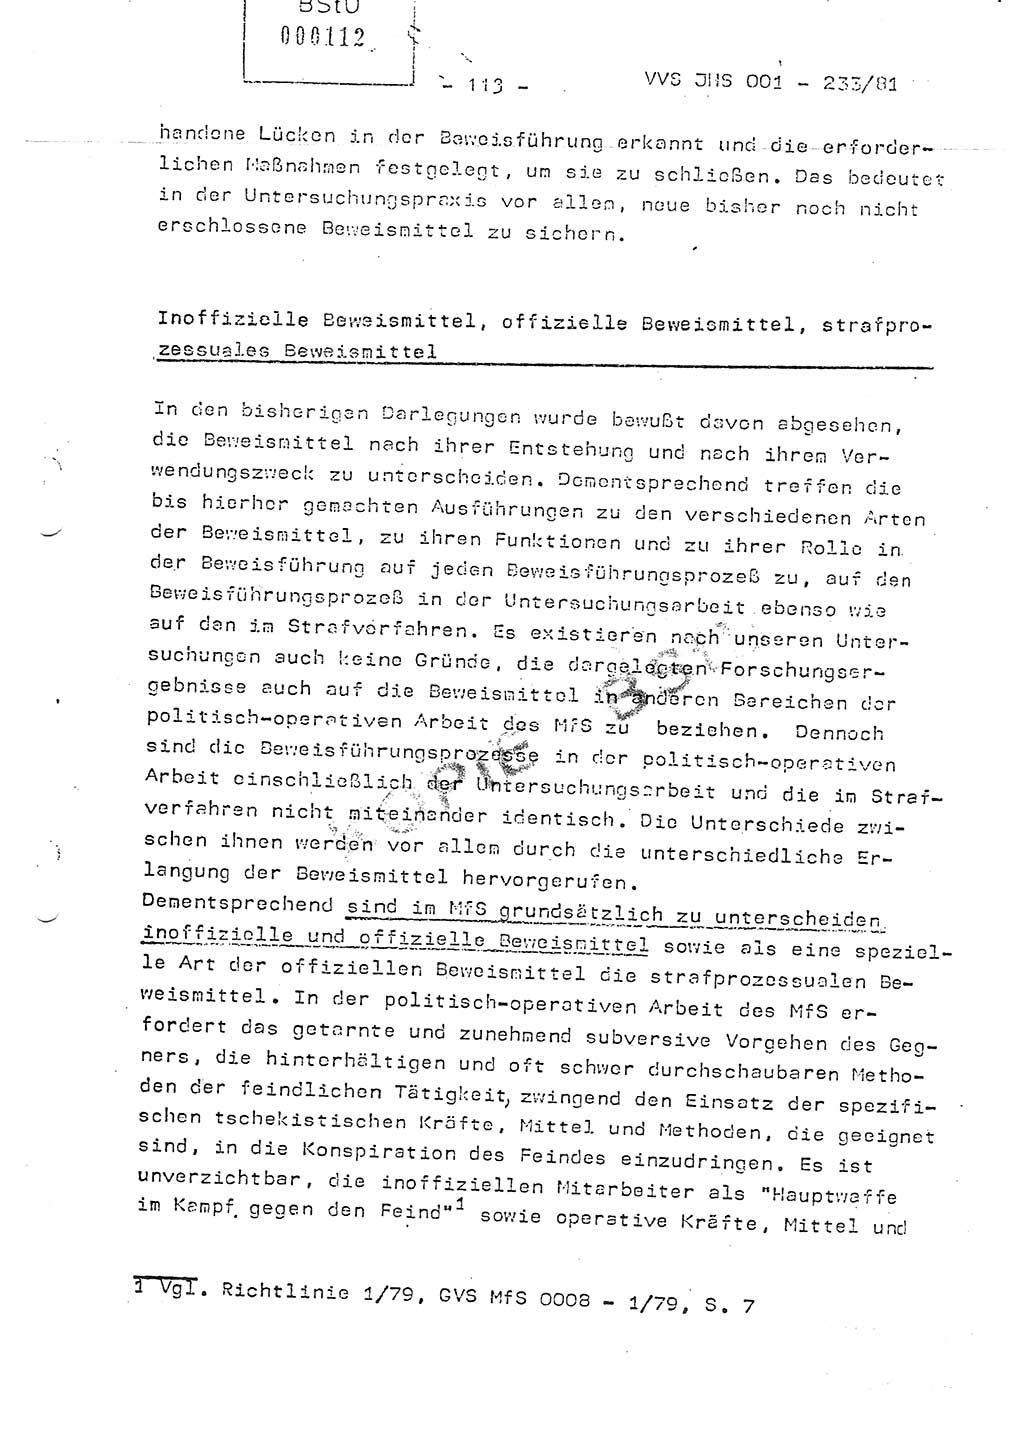 Dissertation Oberstleutnant Horst Zank (JHS), Oberstleutnant Dr. Karl-Heinz Knoblauch (JHS), Oberstleutnant Gustav-Adolf Kowalewski (HA Ⅸ), Oberstleutnant Wolfgang Plötner (HA Ⅸ), Ministerium für Staatssicherheit (MfS) [Deutsche Demokratische Republik (DDR)], Juristische Hochschule (JHS), Vertrauliche Verschlußsache (VVS) o001-233/81, Potsdam 1981, Blatt 113 (Diss. MfS DDR JHS VVS o001-233/81 1981, Bl. 113)